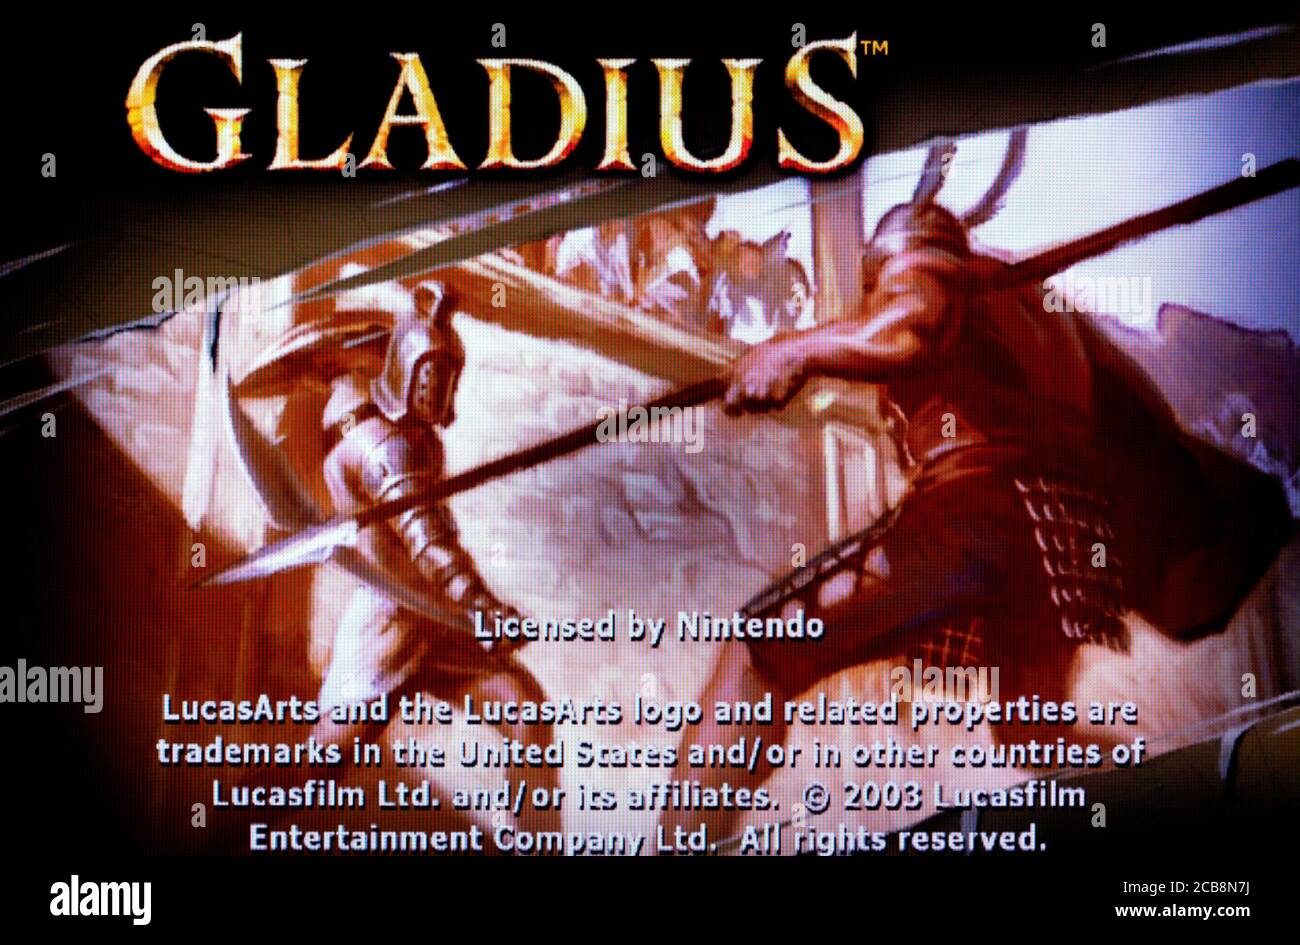 gladius gamecube